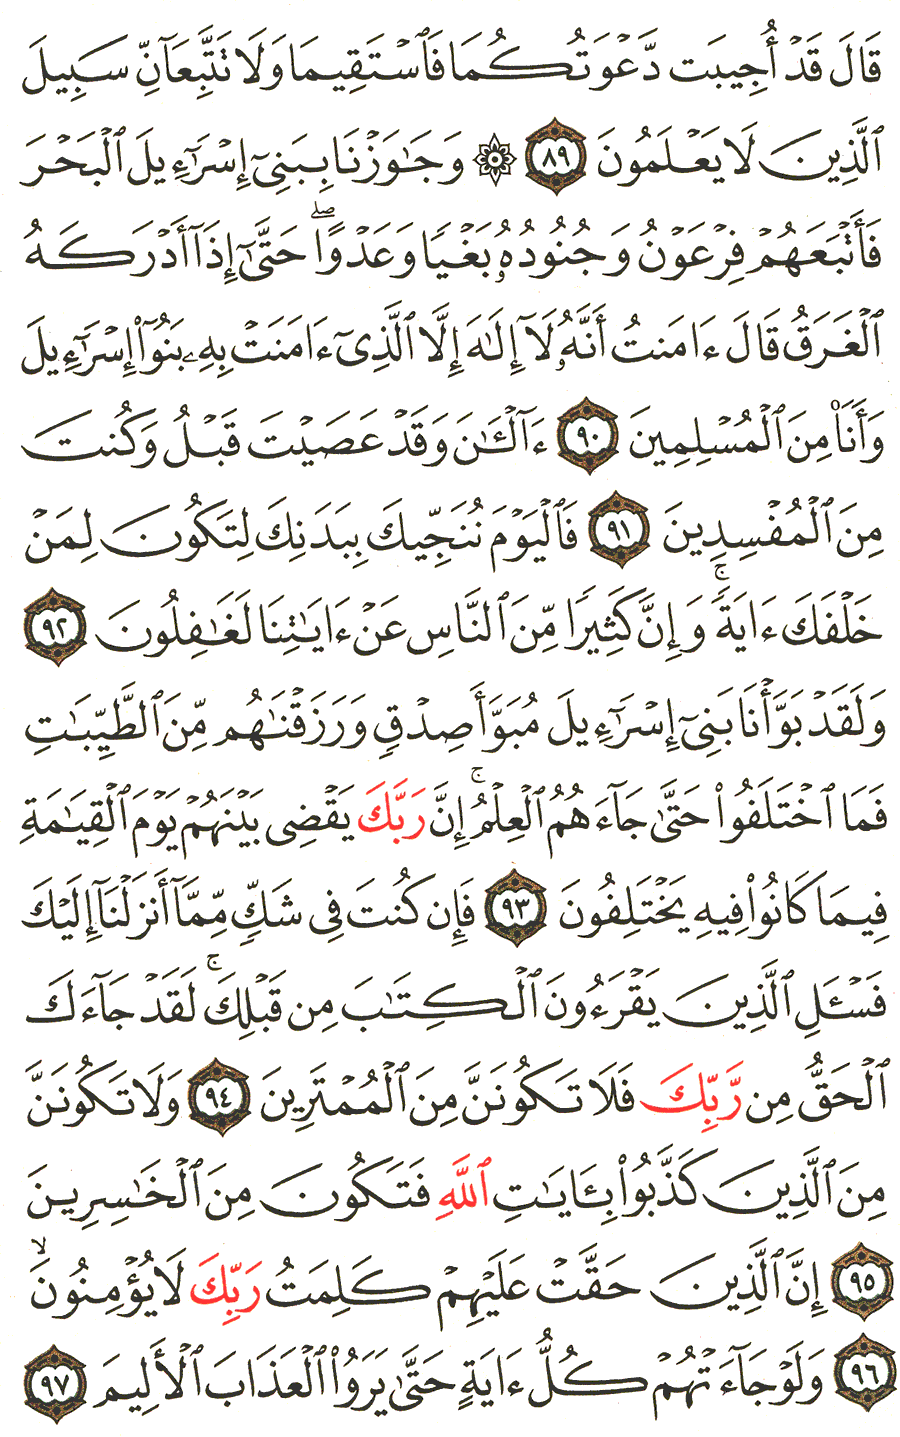 الصفحة 219 من القرآن الكريم